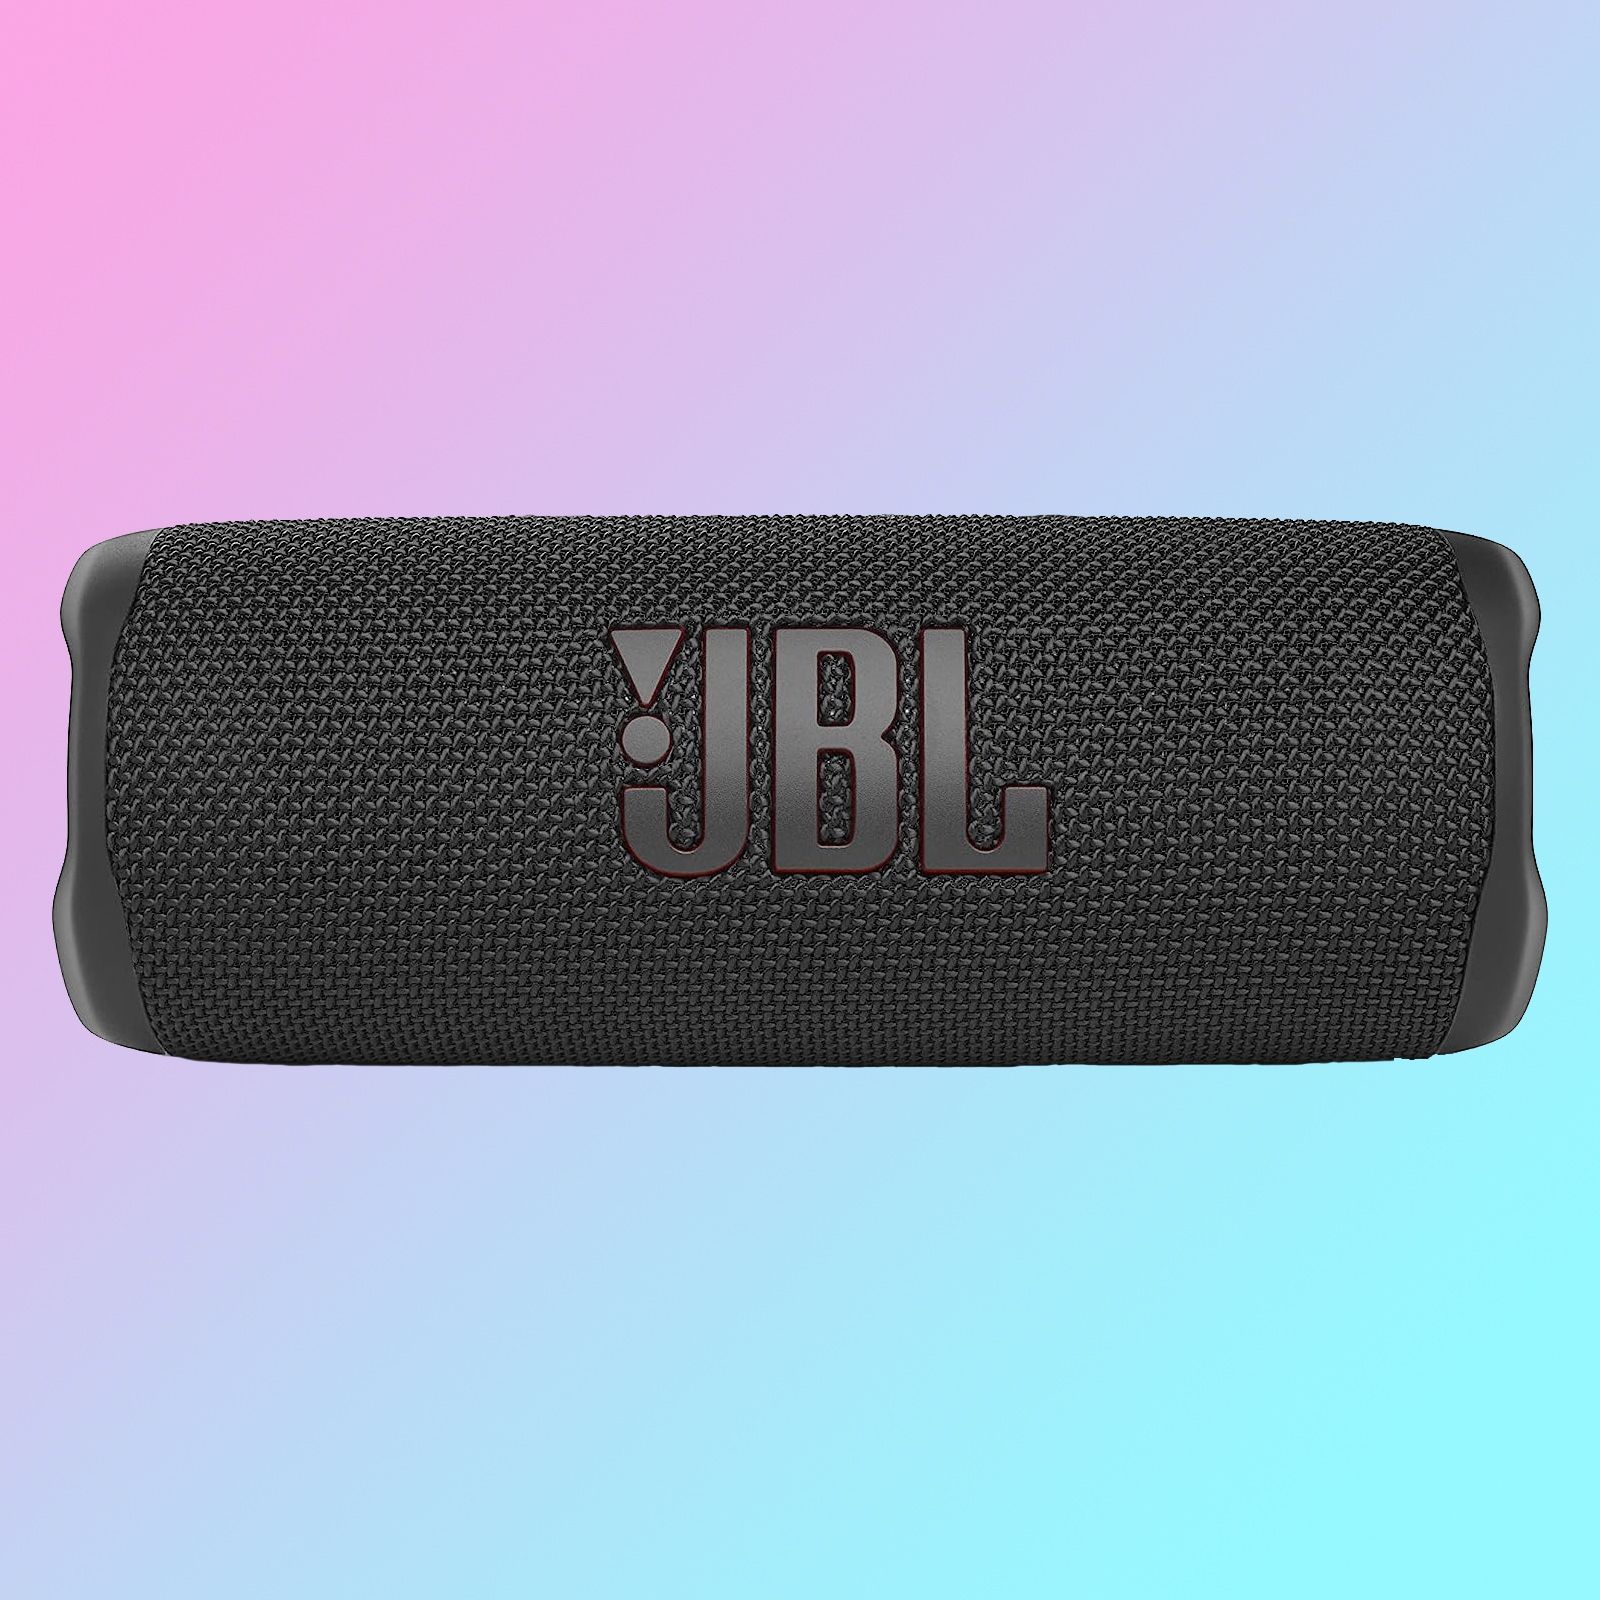 JBL Flip 6 square